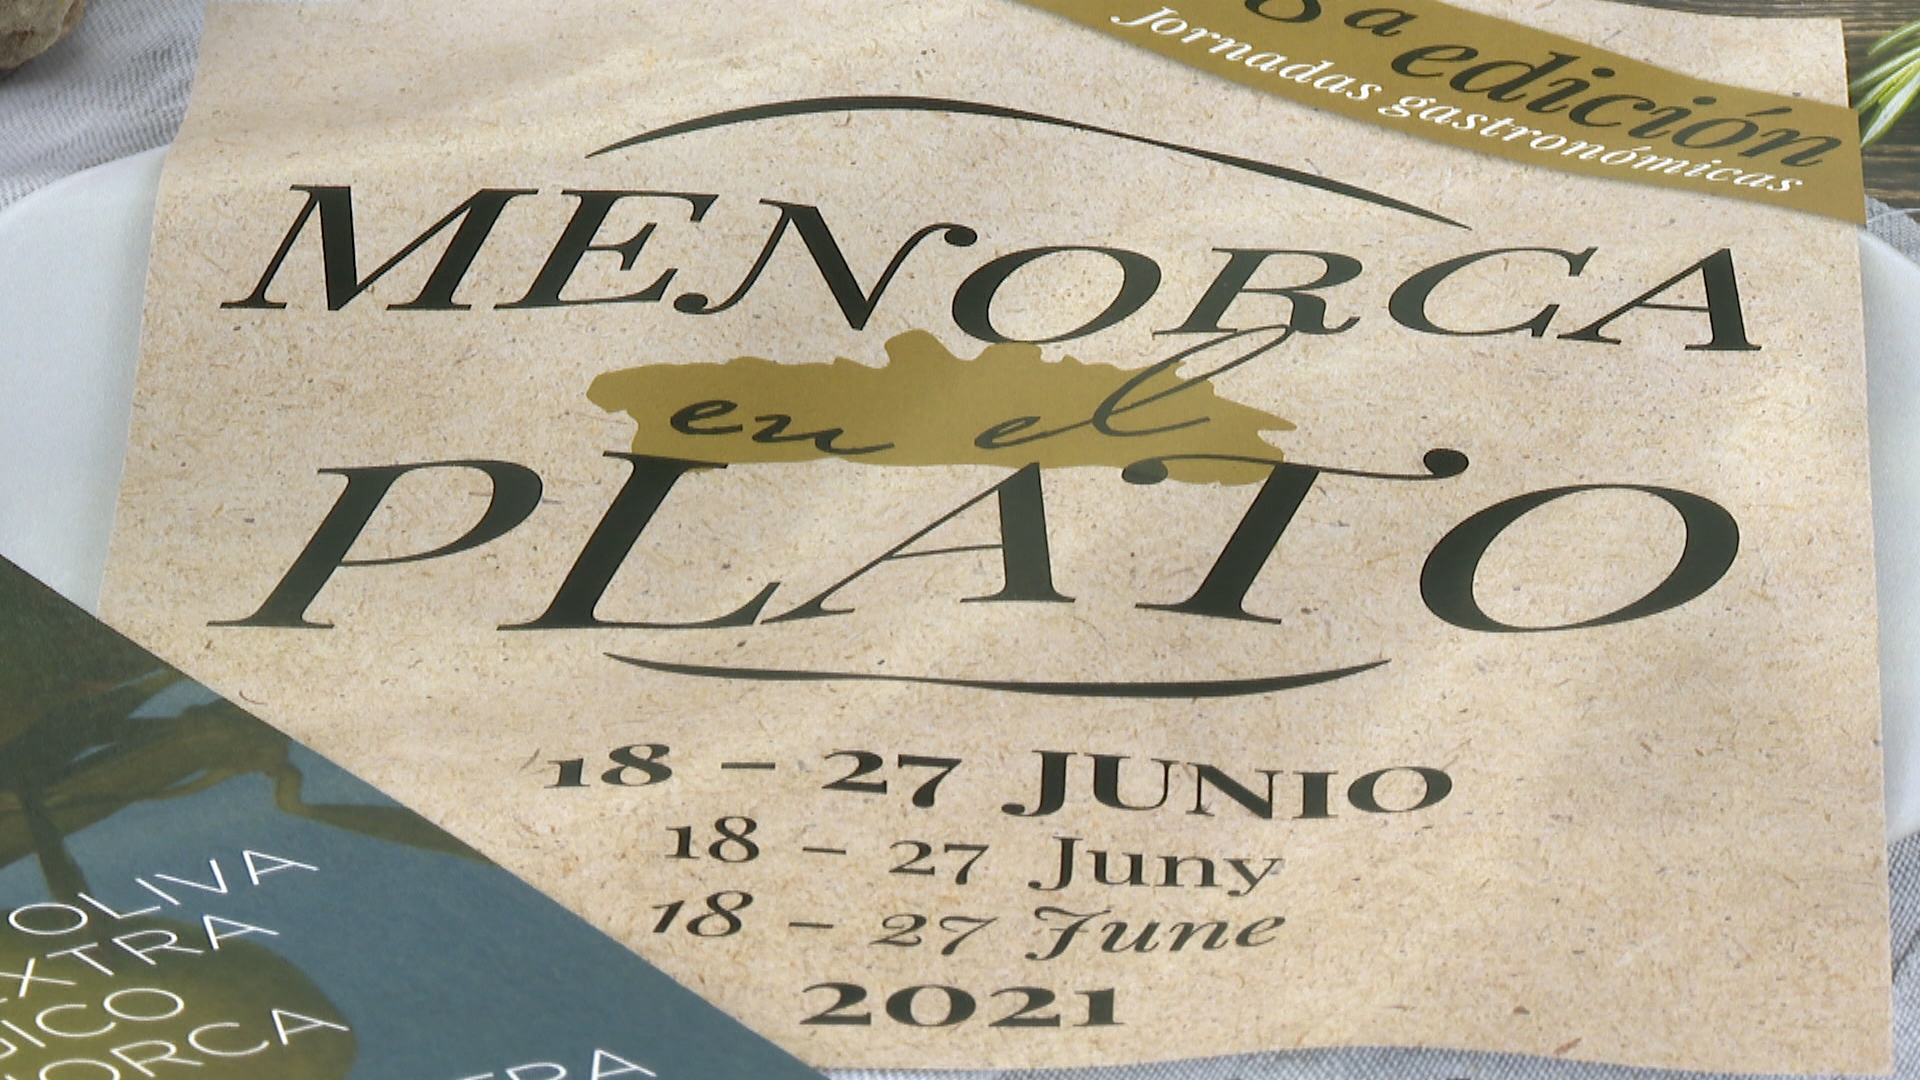 La ruta gastronòmica ‘Menorca en el Plato’ estrena vuitena edició amb 24 restaurants adherits